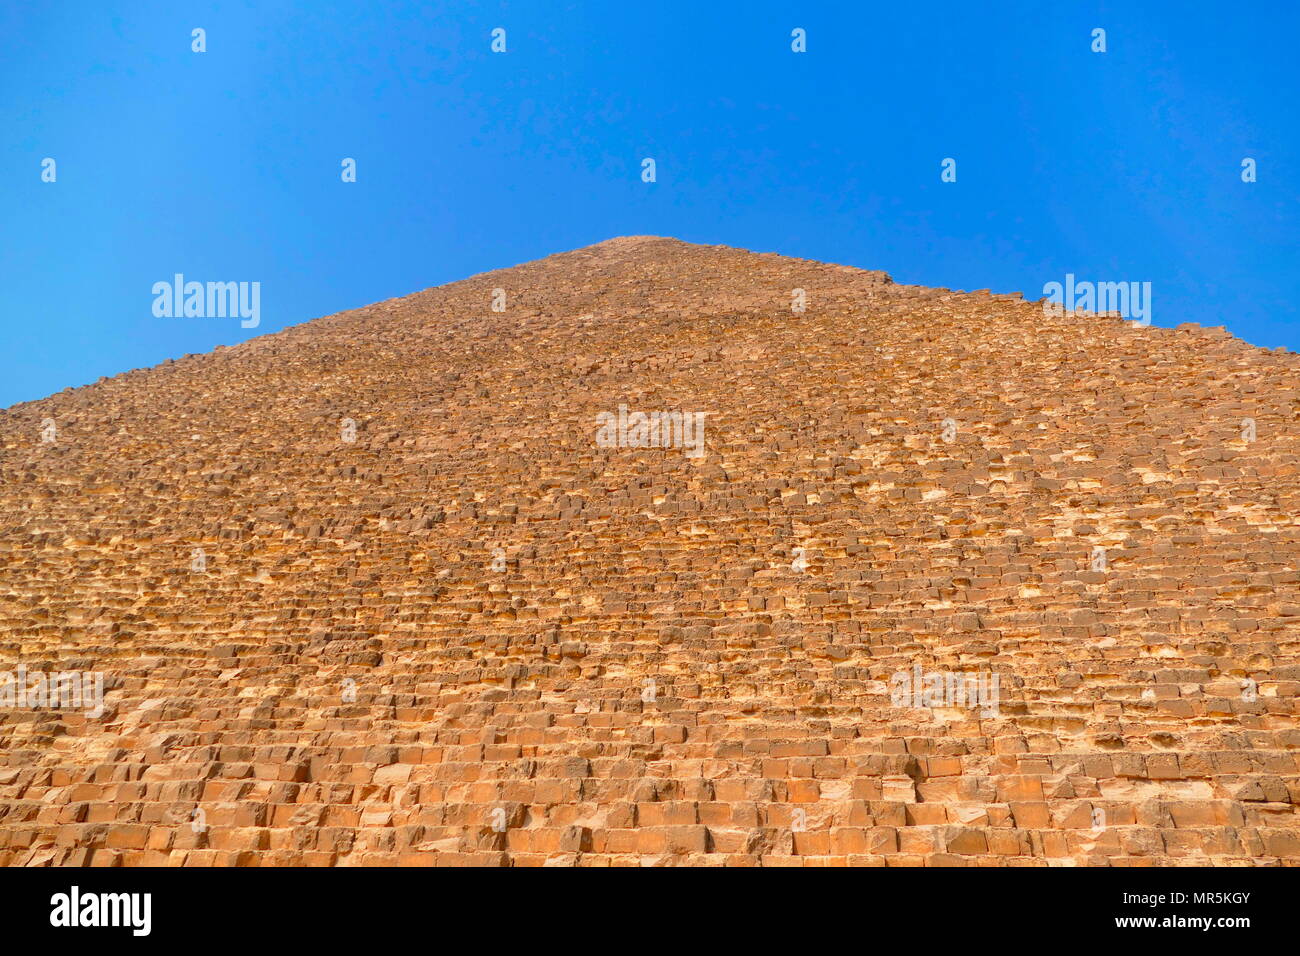 La grande pyramide de Gizeh (pyramide de Chéops ou pyramide de Kheops) ; plus ancienne et la plus grande des trois pyramides dans la pyramide de Gizeh en Égypte complexe. C'est le plus ancien des sept merveilles du monde antique, et le seul à rester en grande partie intacte. Achevée vers 2560 BC. Banque D'Images